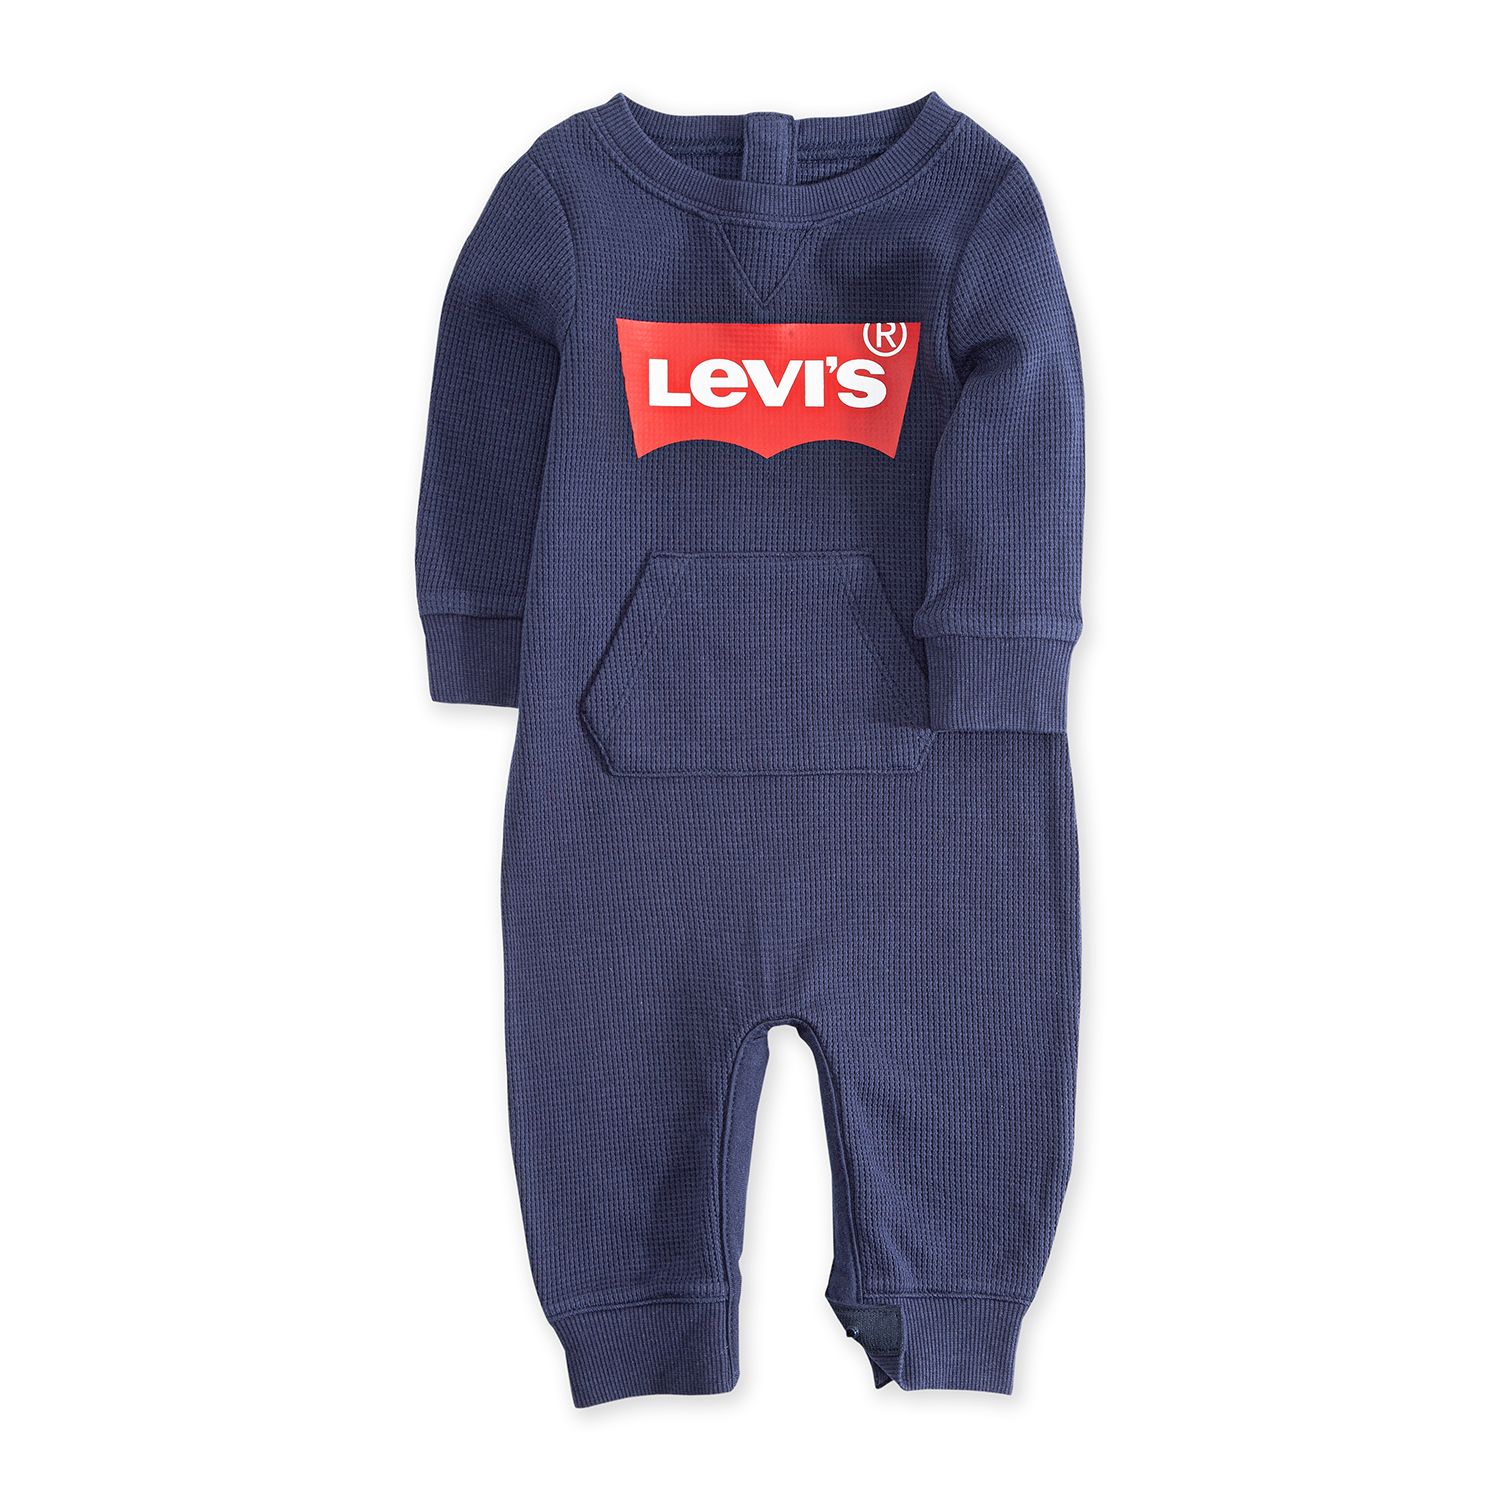 levis overalls baby